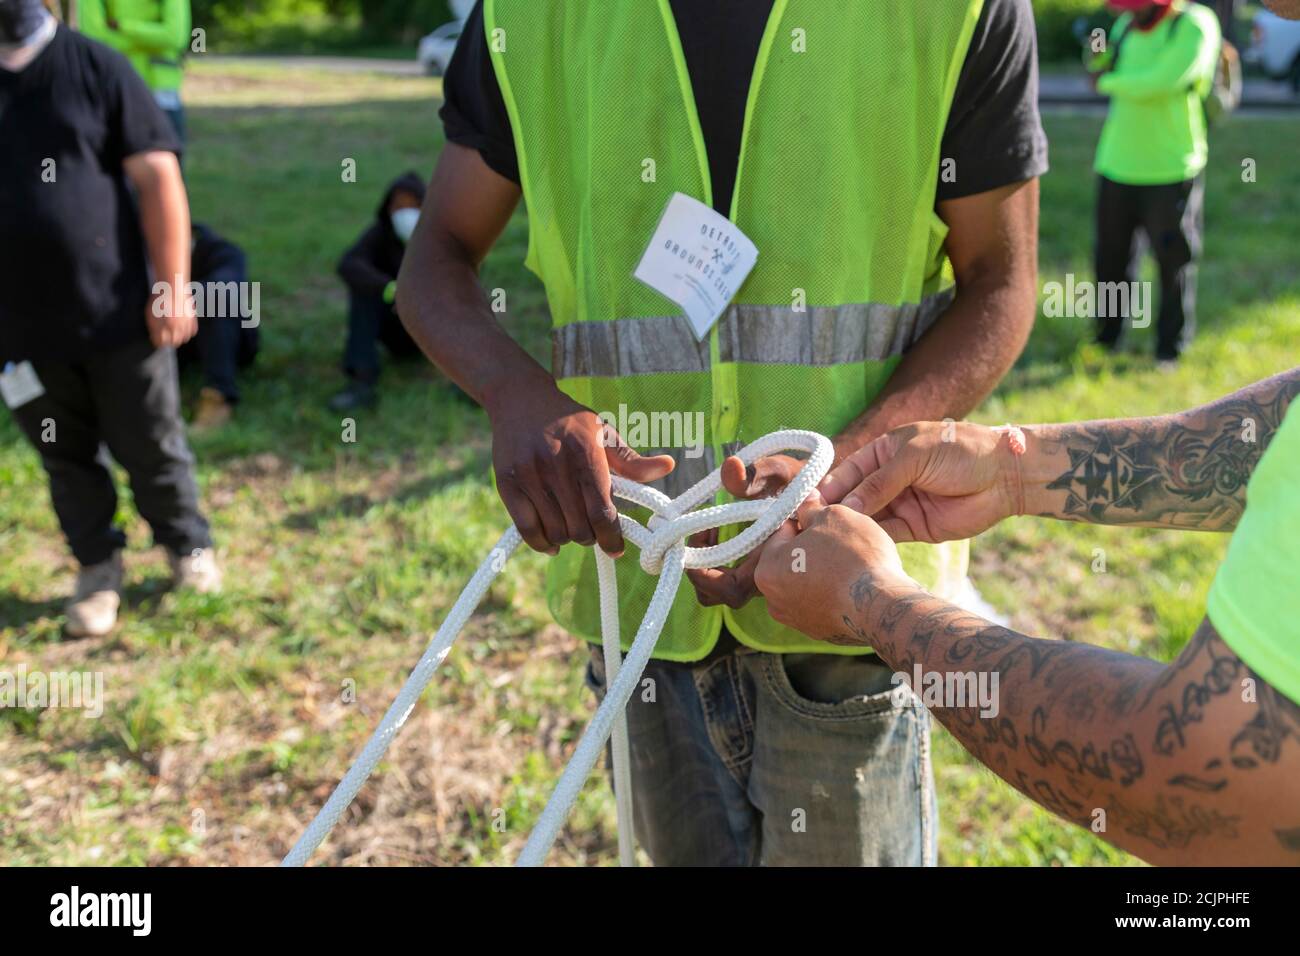 Detroit, Michigan - Arbeiter der Detroit Grounds Crew lernen, wie man die Seile benutzt, die sie brauchen, um tote oder unerwünschte Bäume abzureißen. Stockfoto